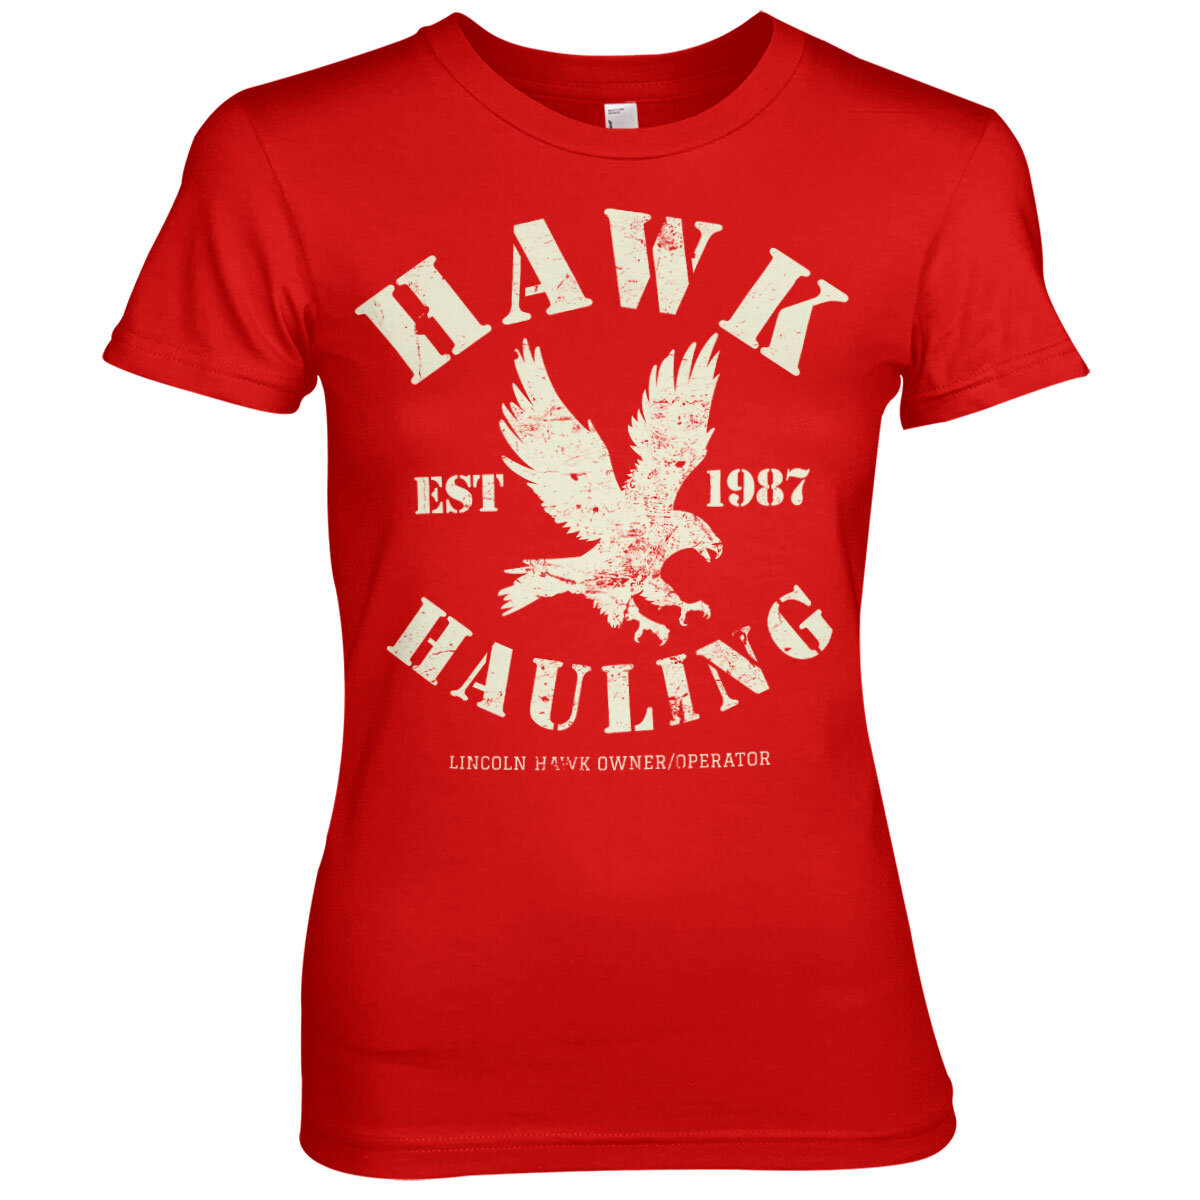 Hawk Hauling Girly Tee